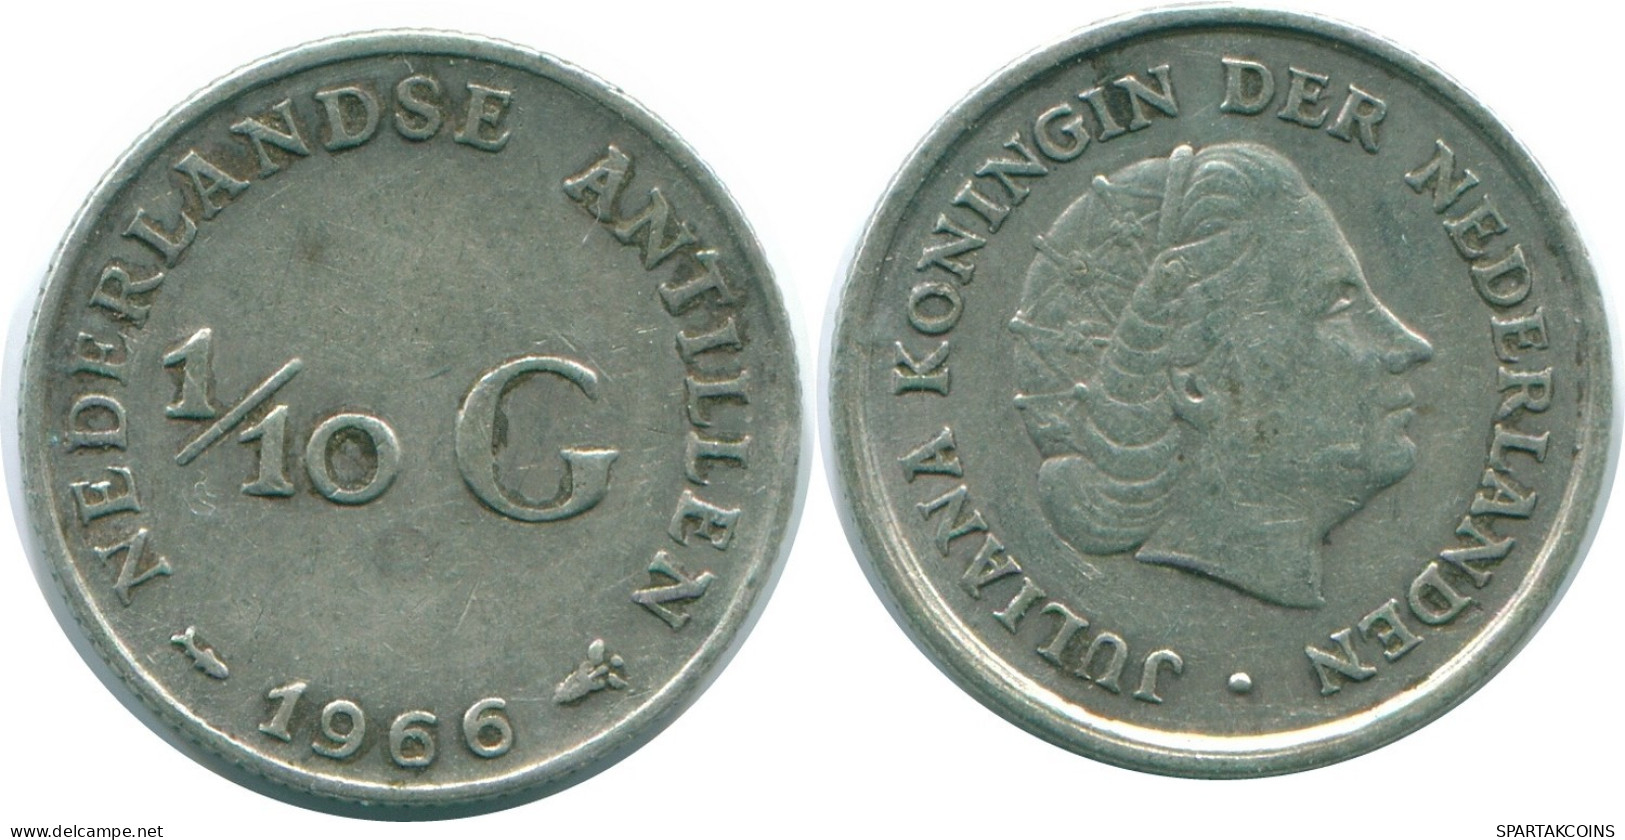 1/10 GULDEN 1966 NIEDERLÄNDISCHE ANTILLEN SILBER Koloniale Münze #NL12827.3.D.A - Antilles Néerlandaises